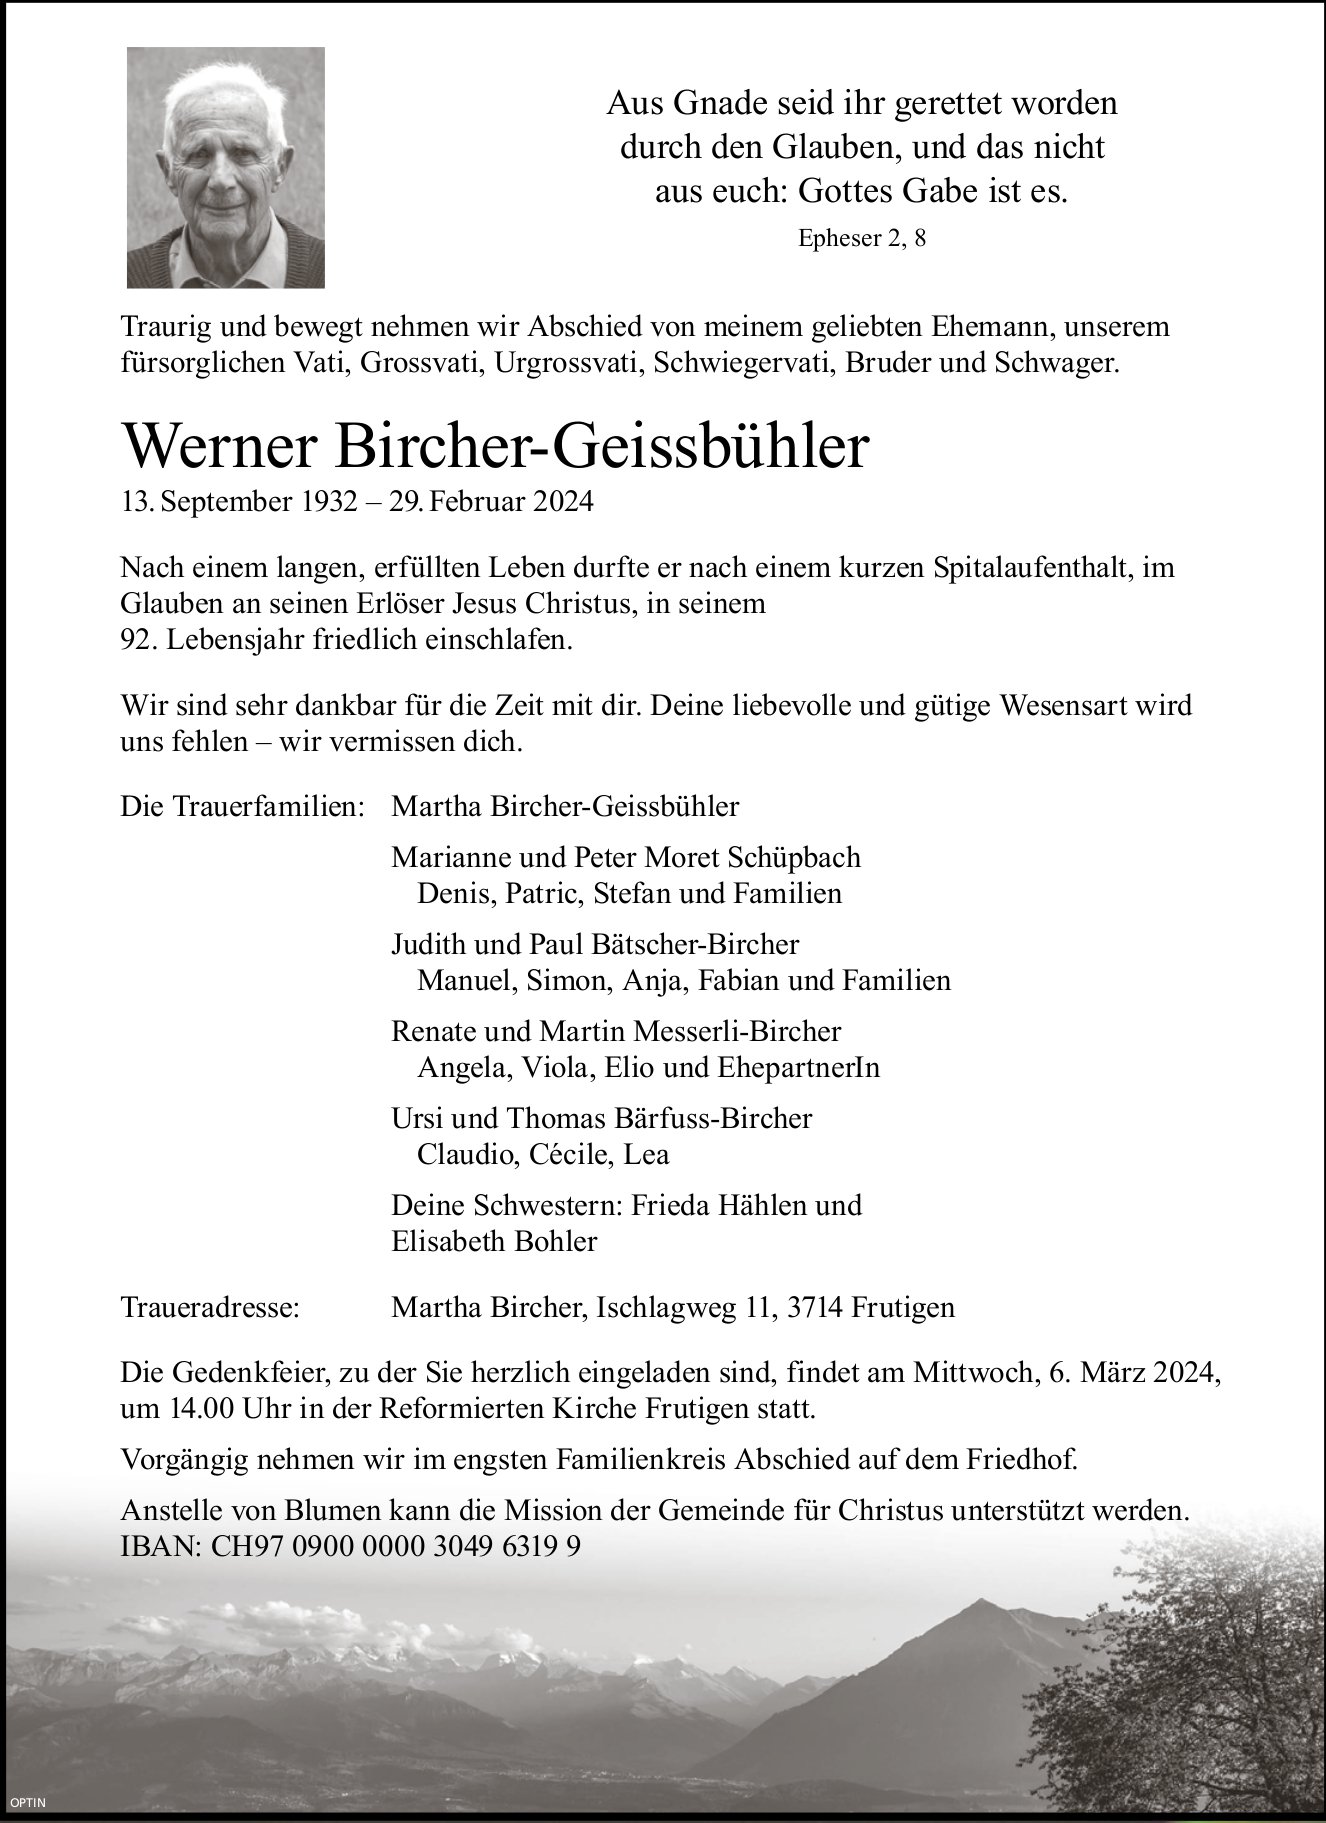 Werner Bircher-Geissbühler, Februar 2024 / TA